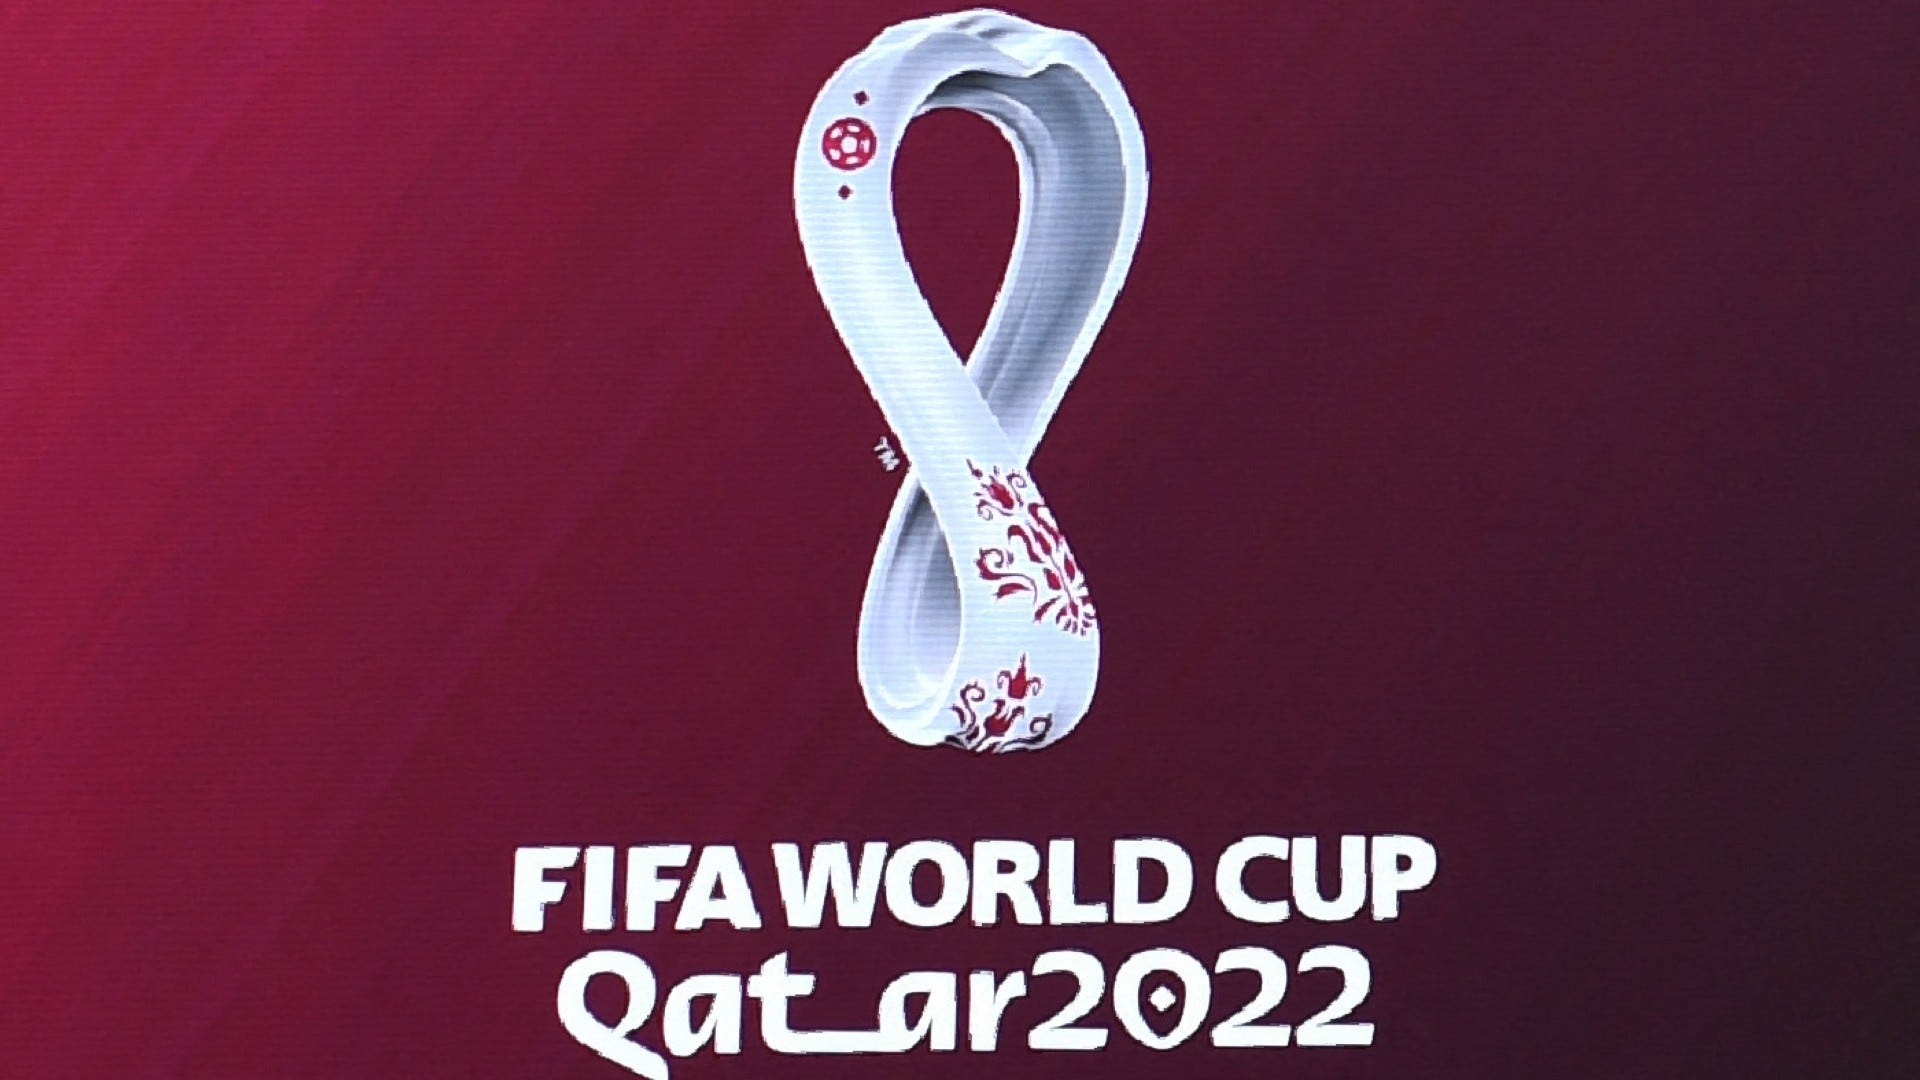 Abema がカタール ワールドカップ全64試合無料生中継を発表 11月21日に開幕 Goal Com 日本